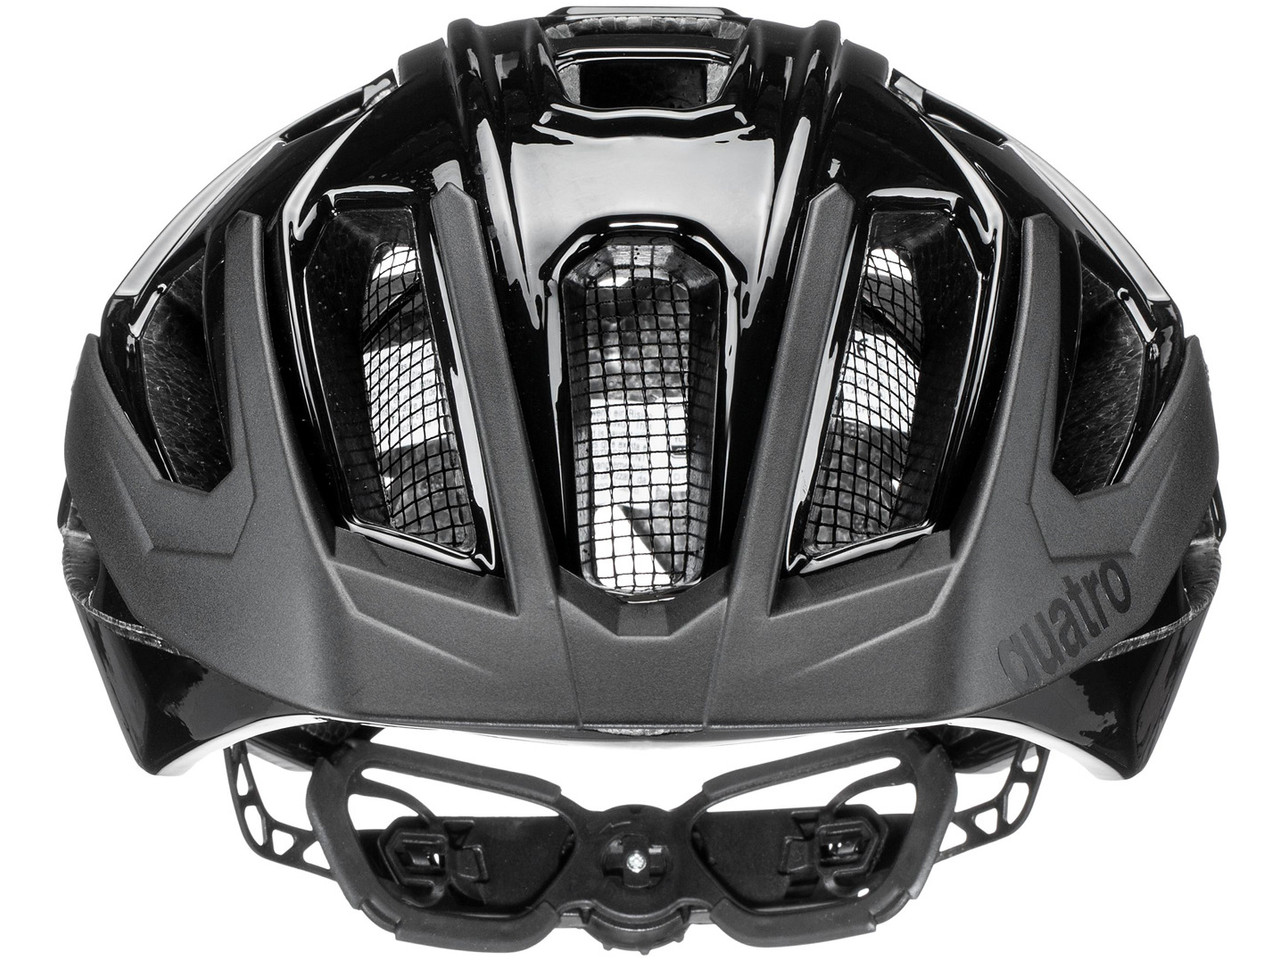 UVEX quatro radhelm casco de bicicleta bike casco de protección allmountain rueda casco s41077523